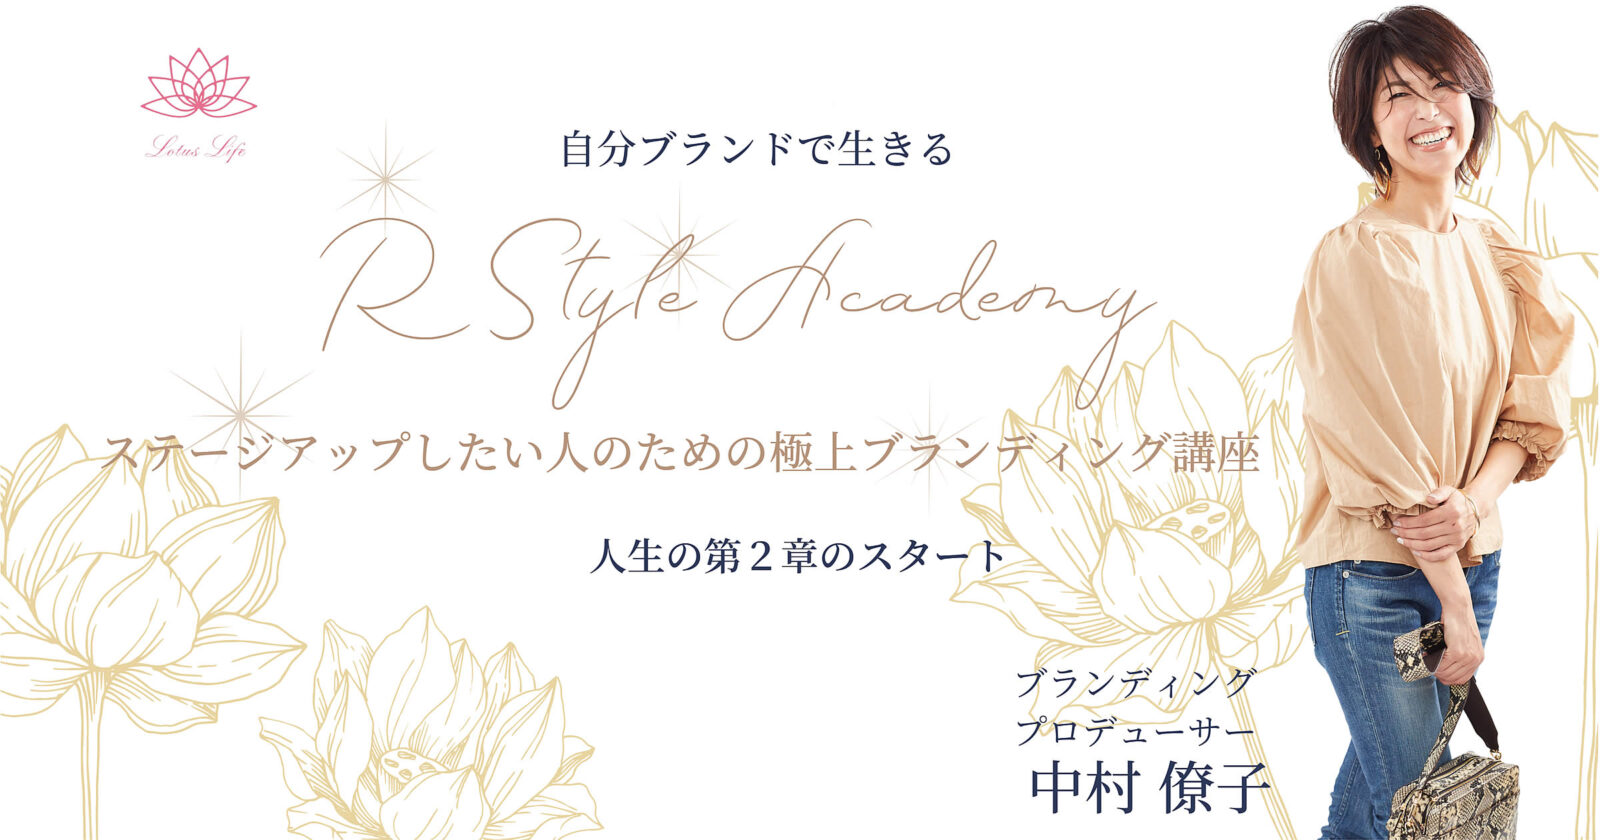 R Style Academy